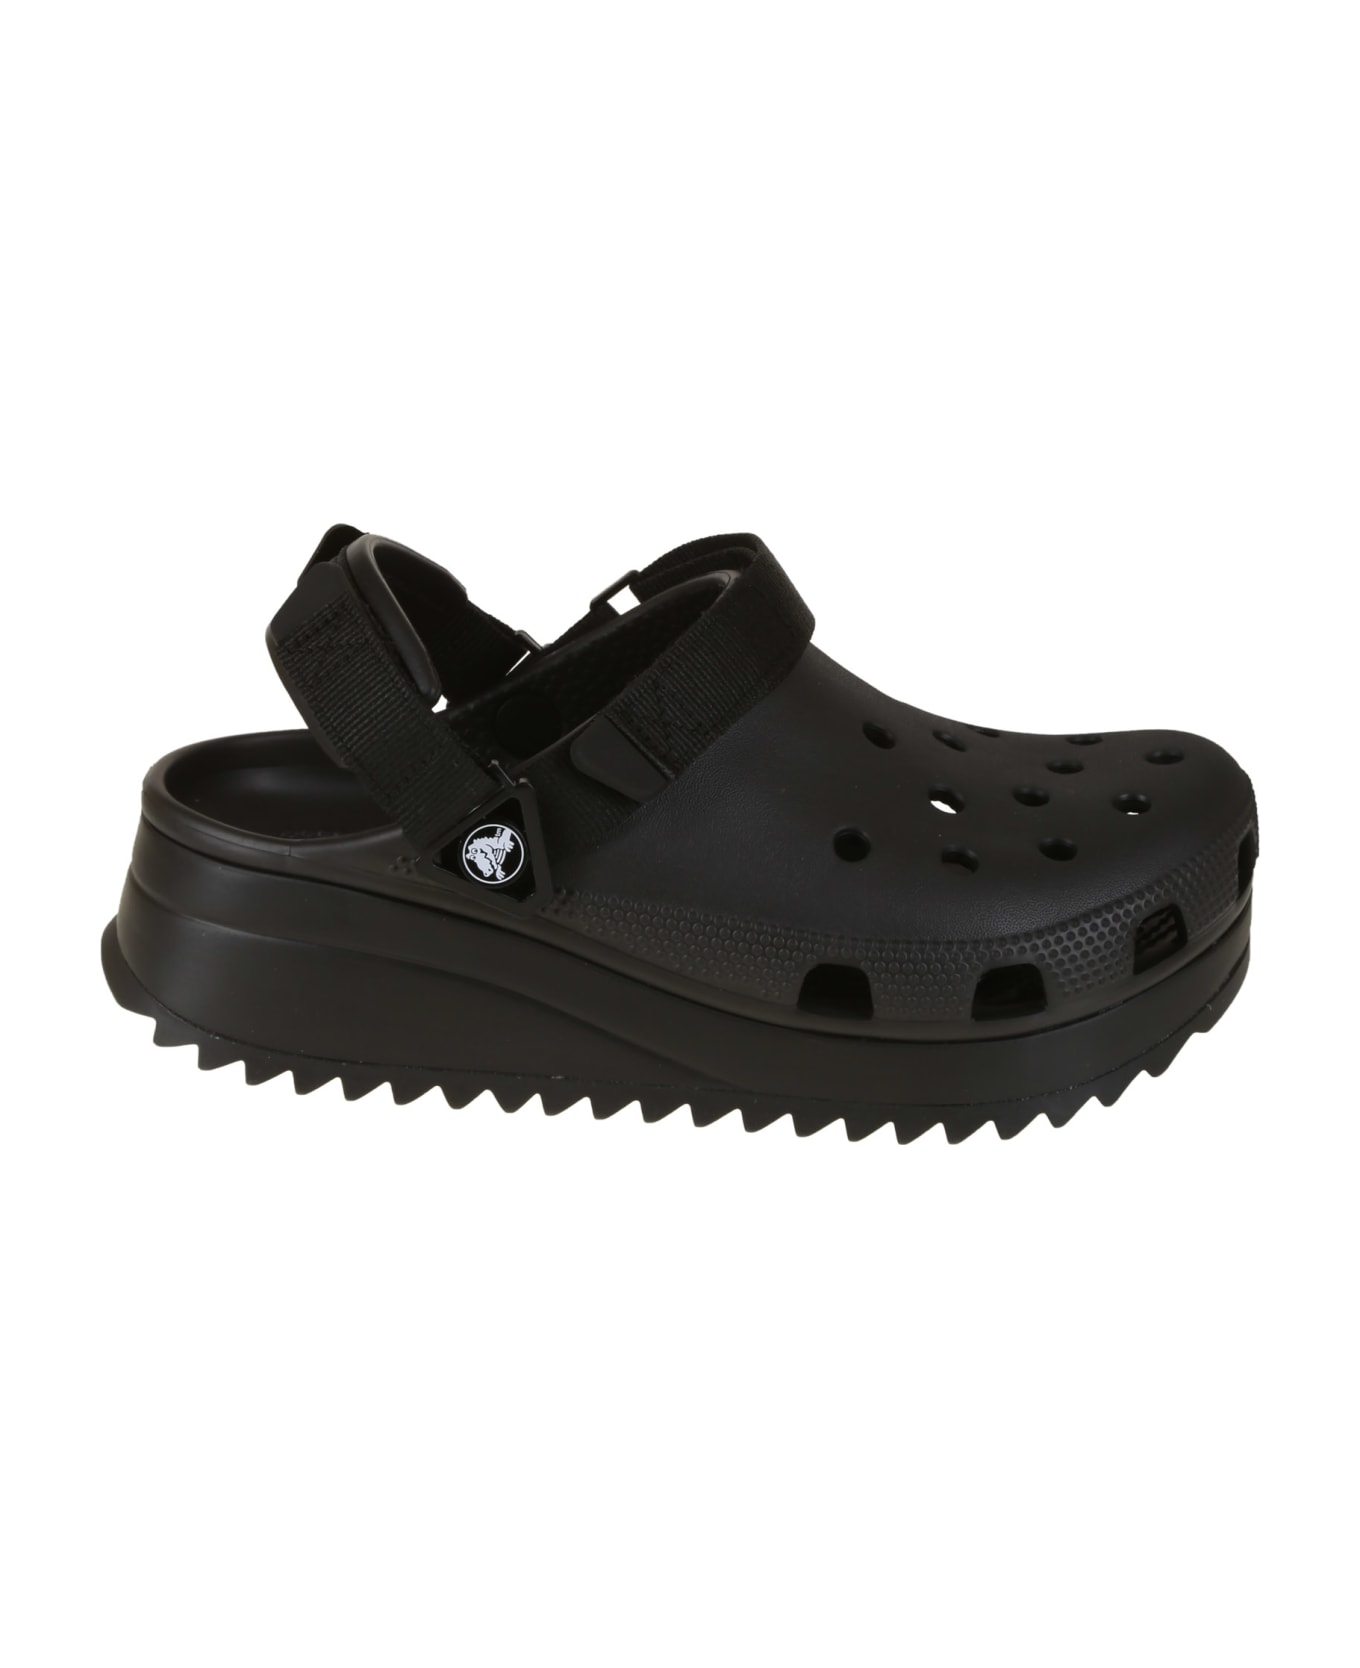 Crocs Classic Hiker Clog - Bkbk Black